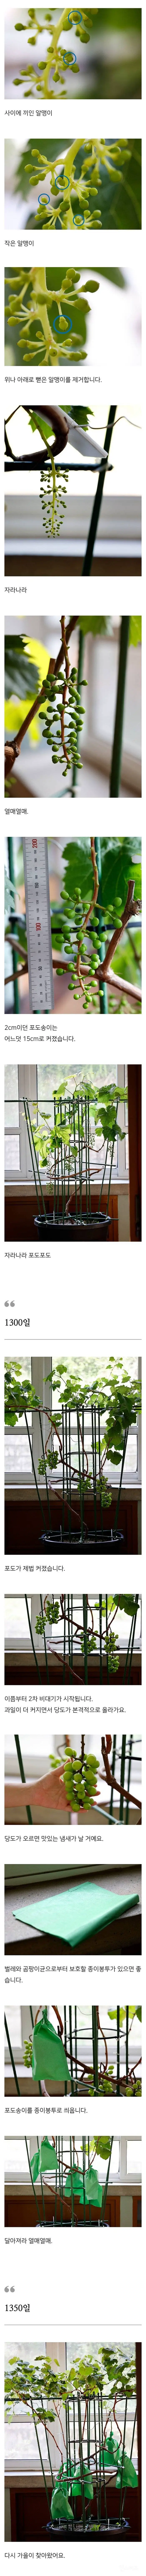 1350일 동안 집에서 샤인머스캣을 직접 키워 수확한 드루이드.jpg | mbong.kr 엠봉